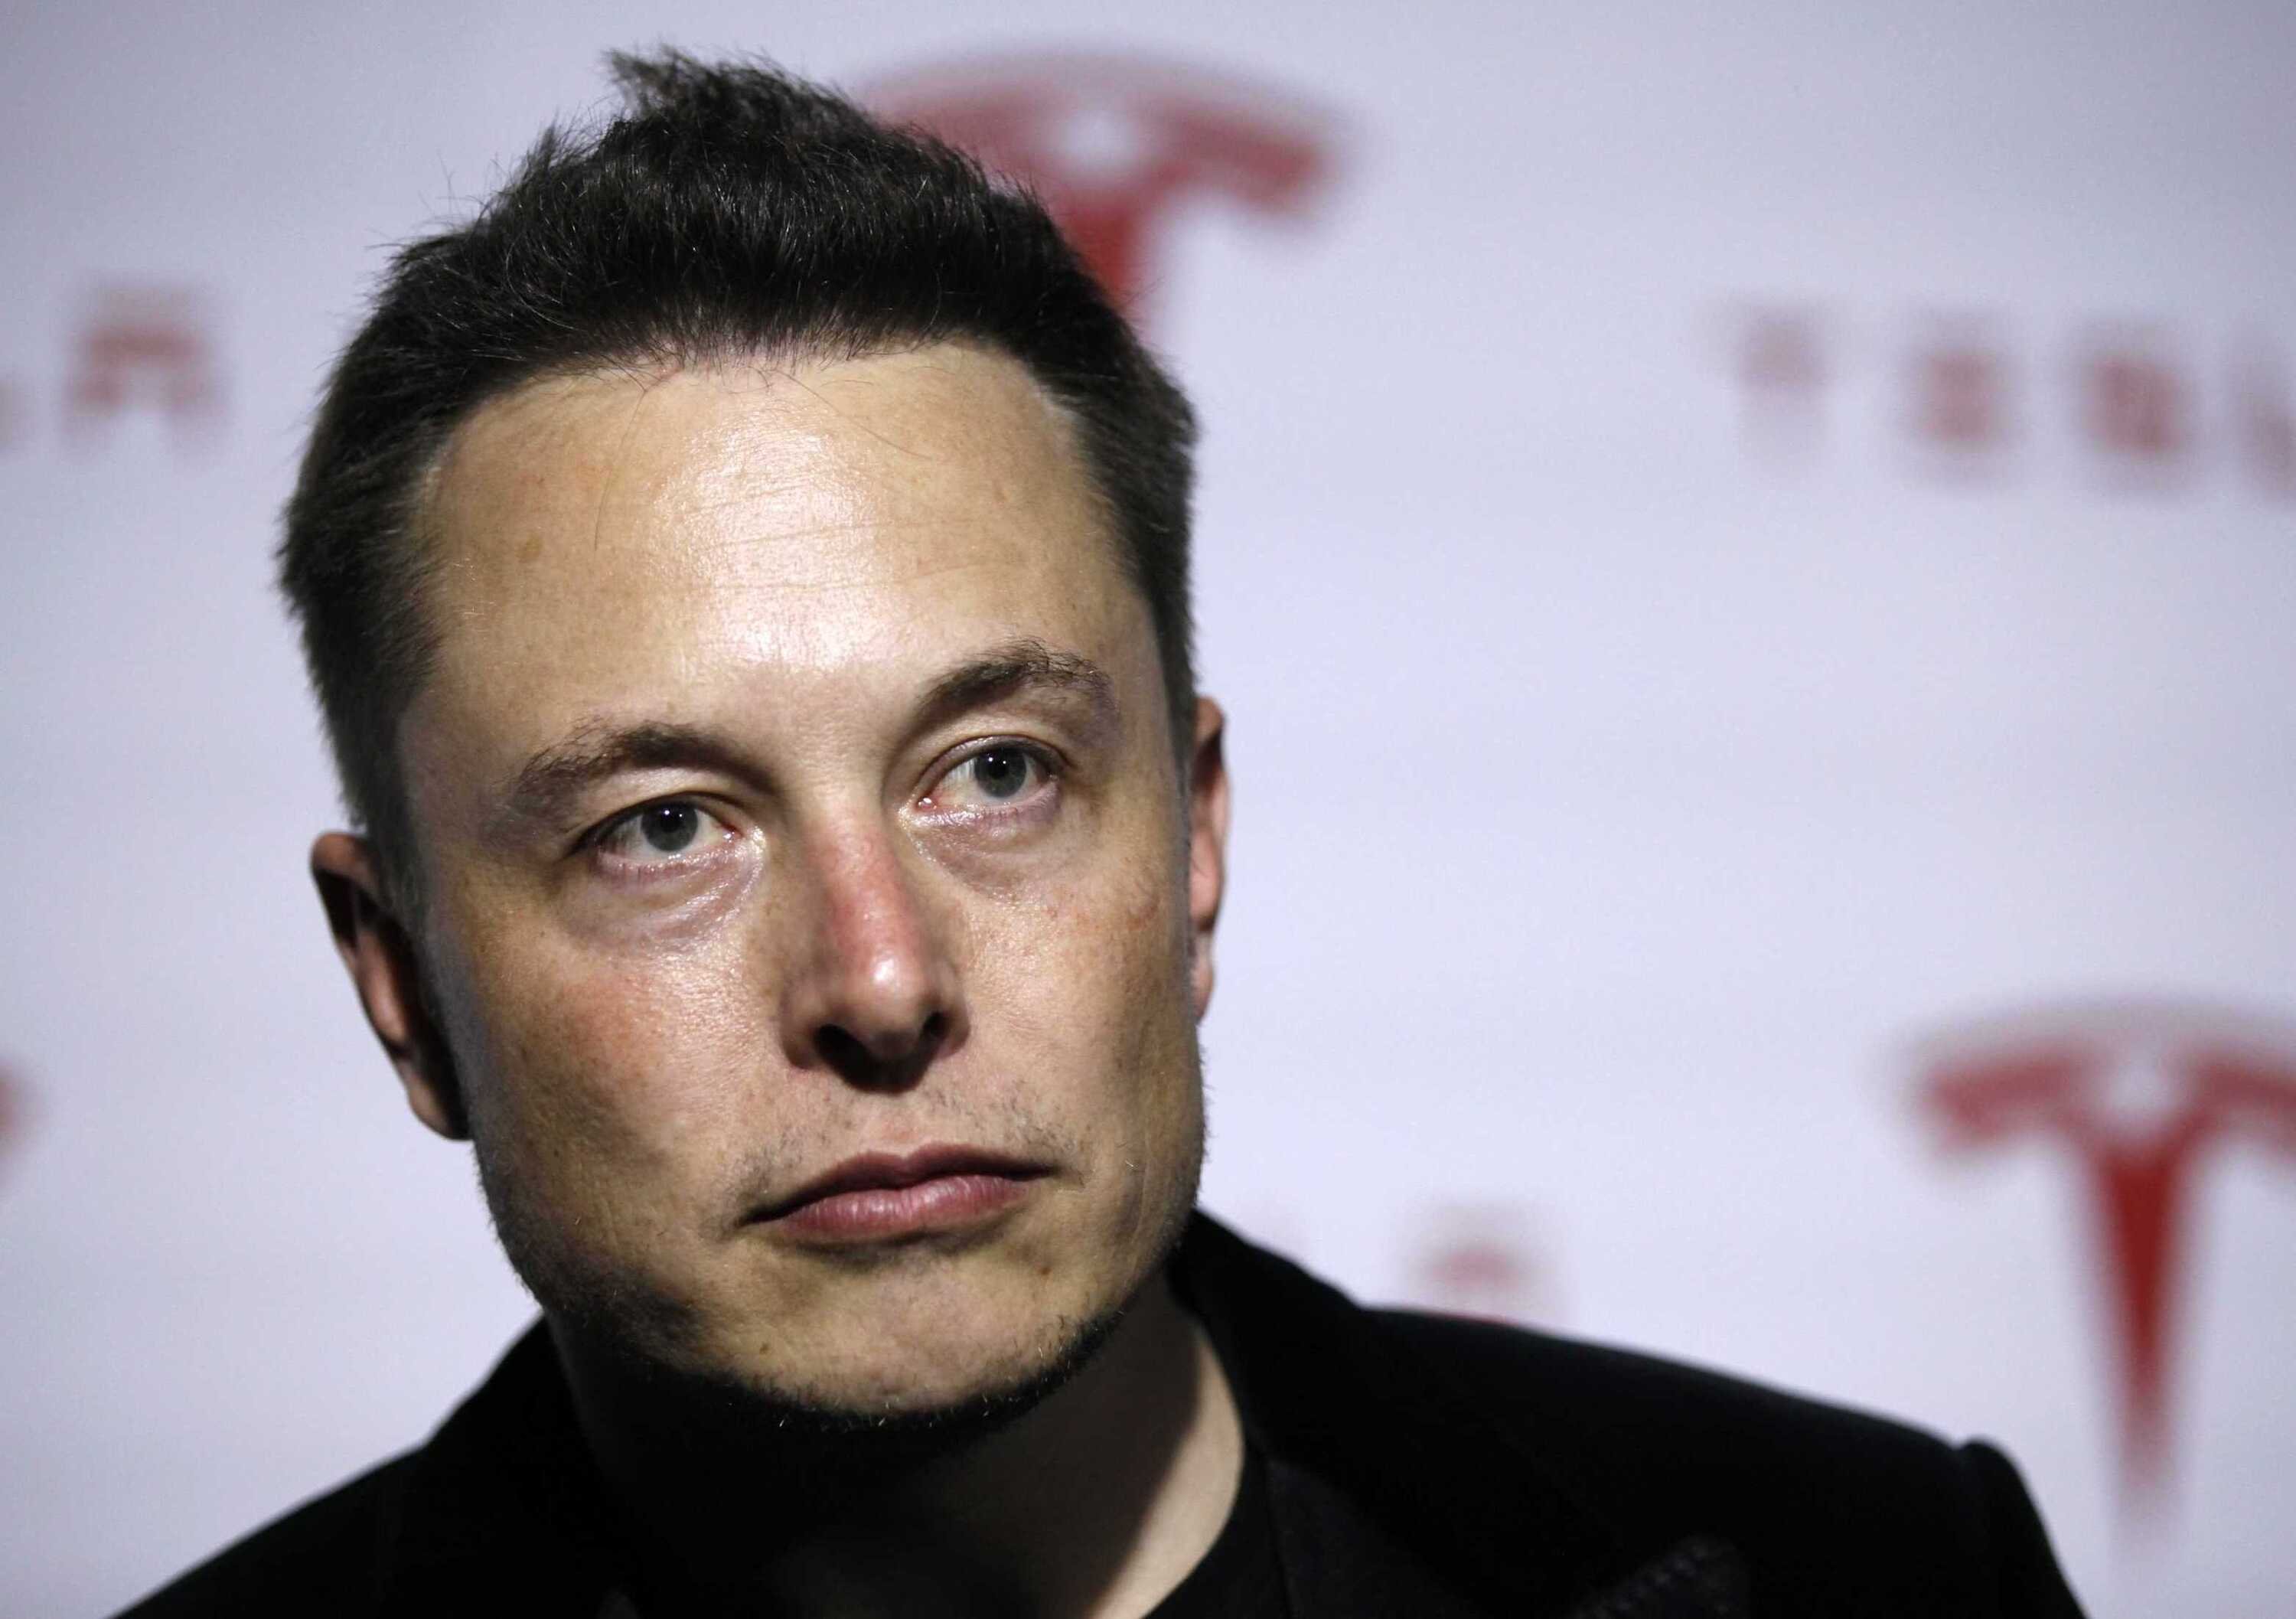 Tesla Vs CoronaVirus, Anche Elon soffre: poco per COVID e tanto per TEST [falsi positivi]